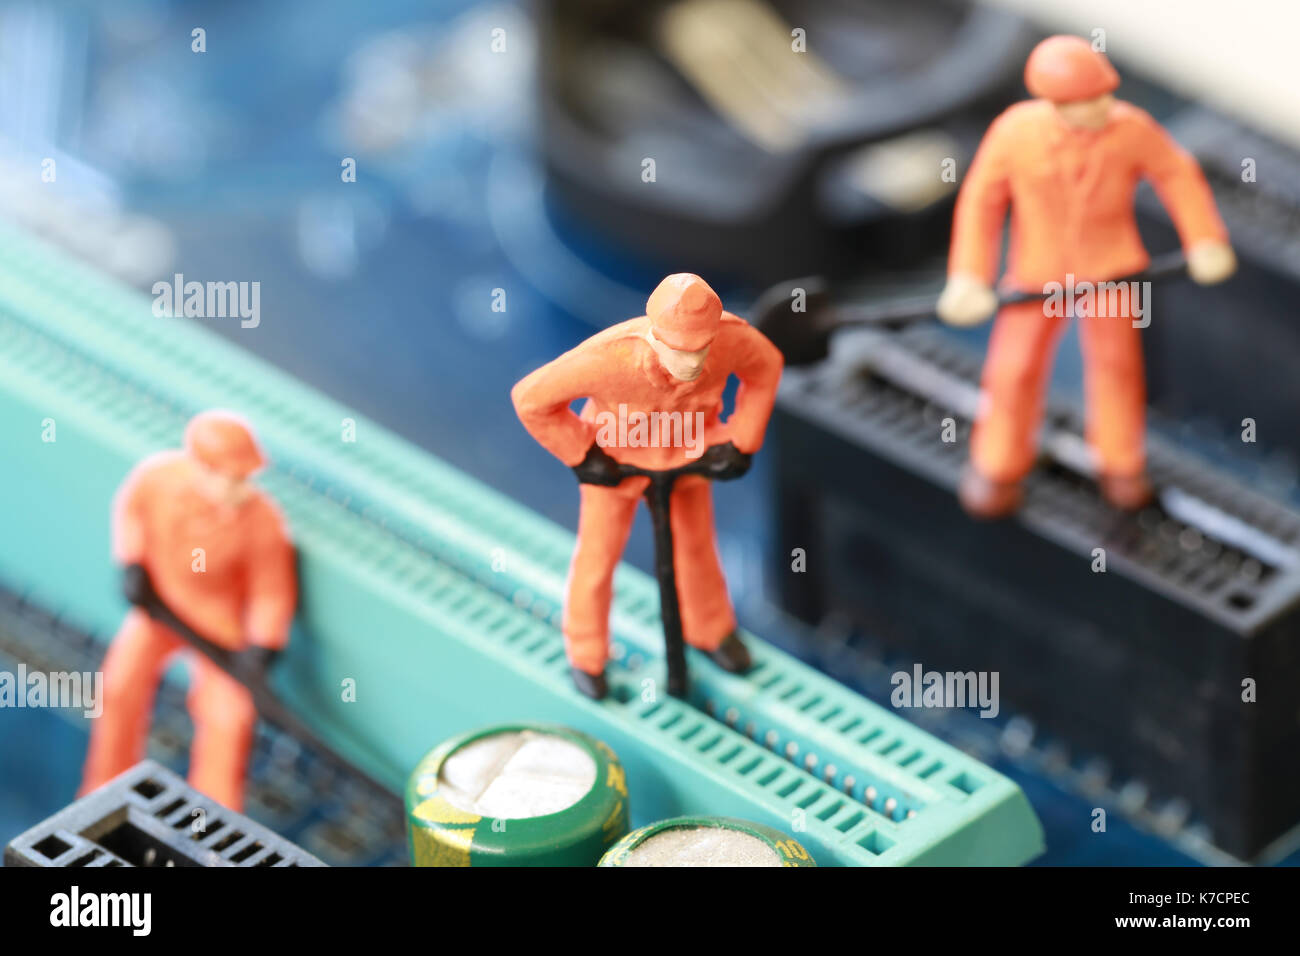 Idee eines Arbeitnehmers ist Bergleute graben für Erz auf dem Computer Mainboard im Konzept des Tuns des Geschäfts und digitale Währung. Stockfoto